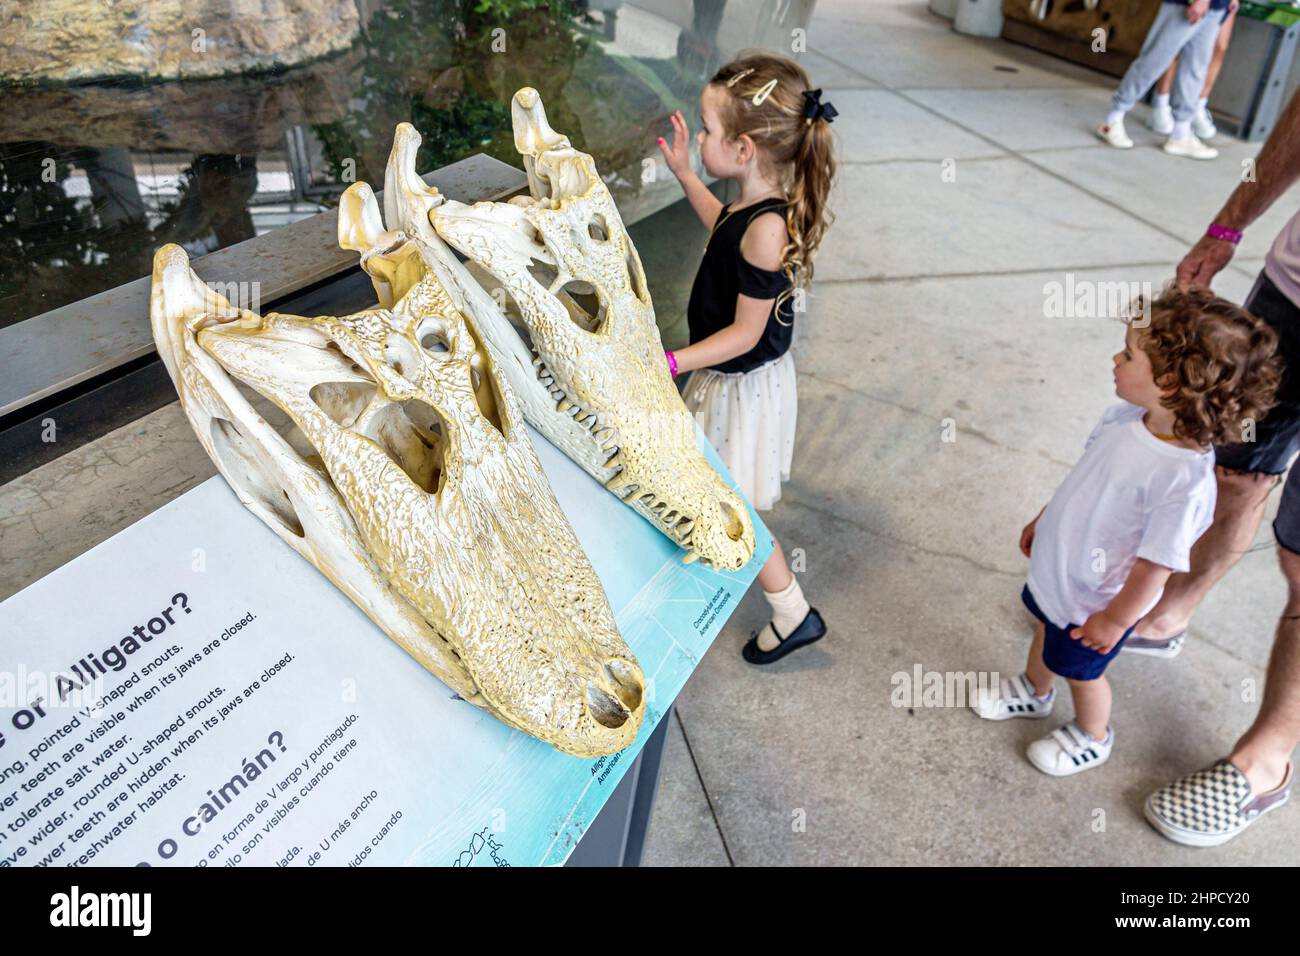 Miami Florida Phillip und Patricia Frost Museum of Science innen Ausstellung Hands-on Alligator Krokodil Schädel Vergleich Mädchen suchen Stockfoto